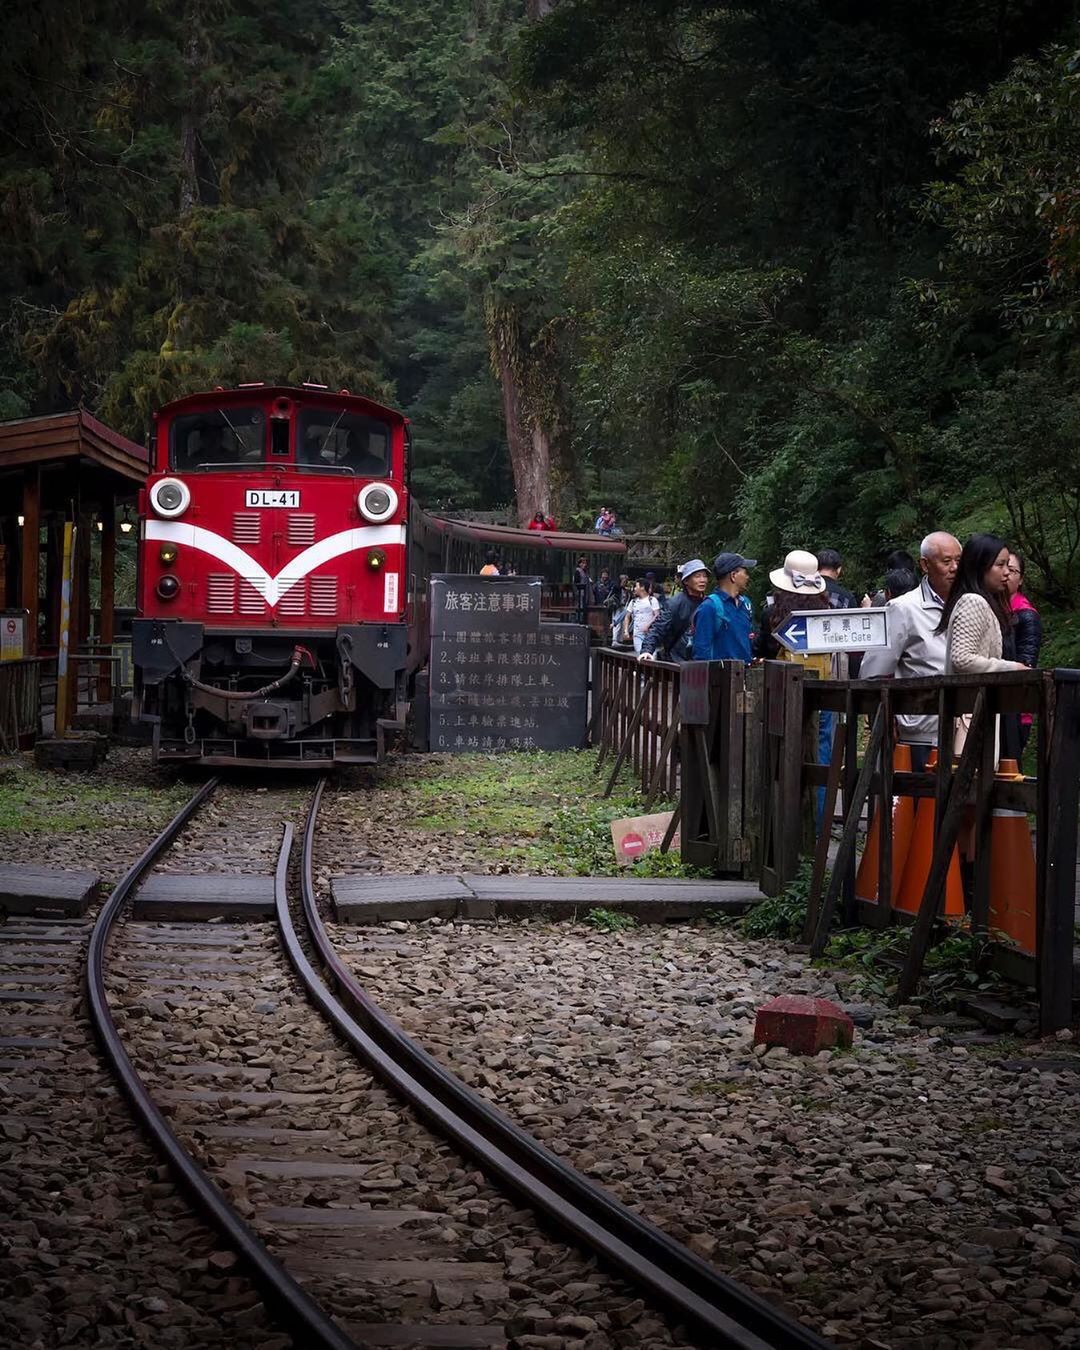 ⠀⠀⠀⠀⠀⠀⠀⠀⠀⠀⠀阿里山小火車就像是載著小時後的夢想一樣這麼簡單純粹☺️-⠀⠀⠀⠀⠀⠀⠀⠀⠀⠀⠀⠀感謝 @zhenyang31...